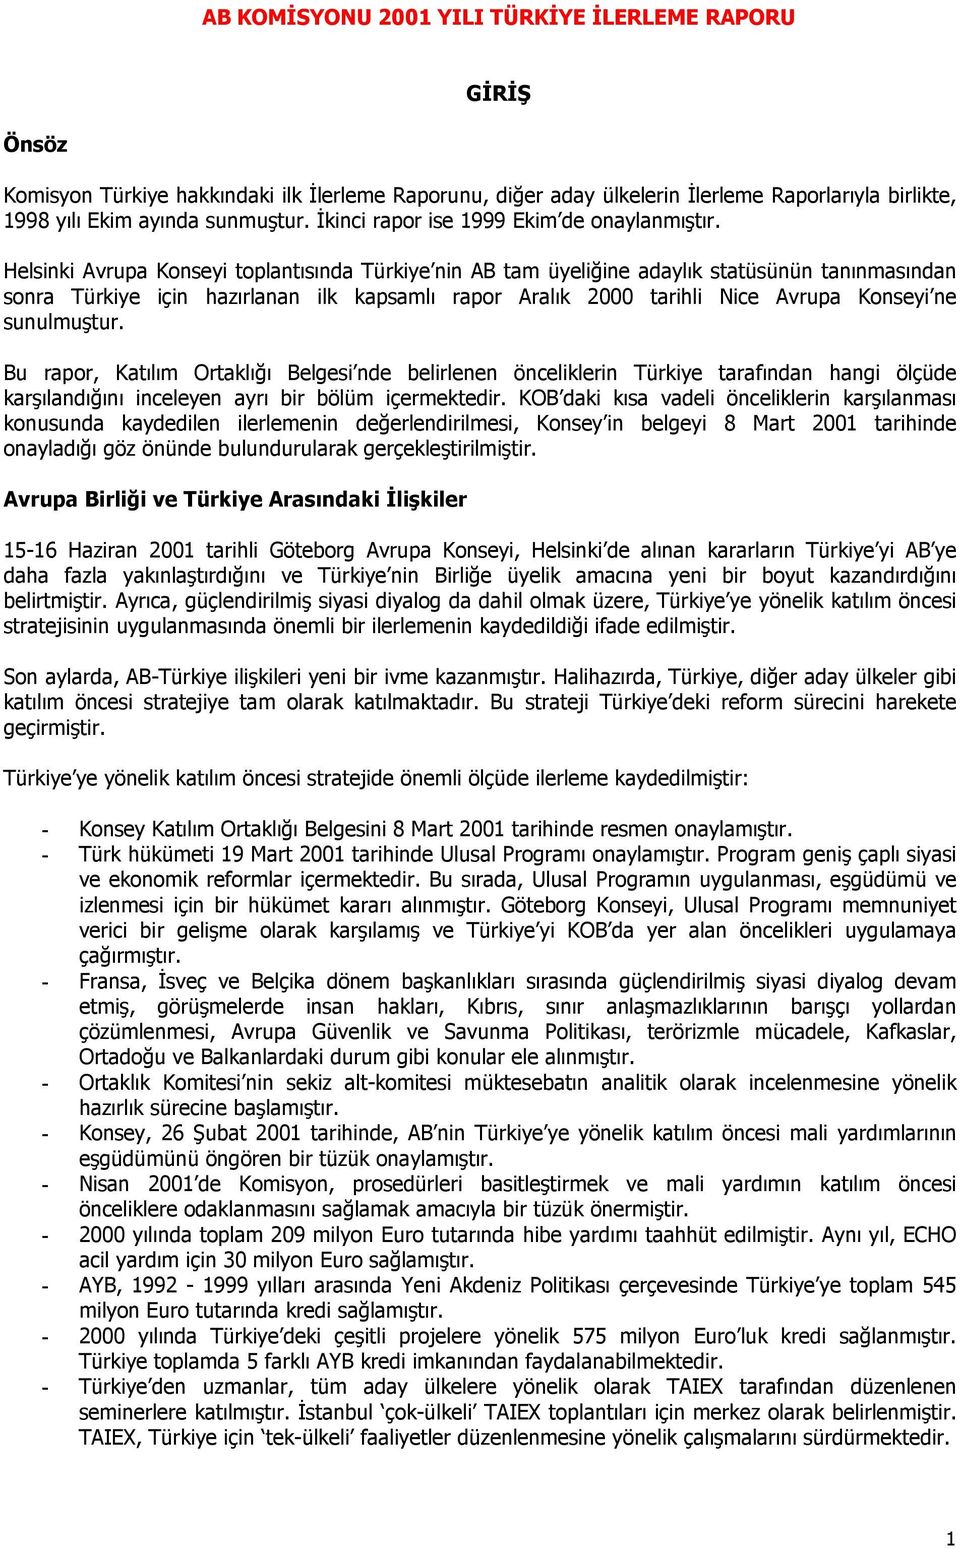 Helsinki Avrupa Konseyi toplantısında Türkiye nin AB tam üyeliğine adaylık statüsünün tanınmasından sonra Türkiye için hazırlanan ilk kapsamlı rapor Aralık 2000 tarihli Nice Avrupa Konseyi ne